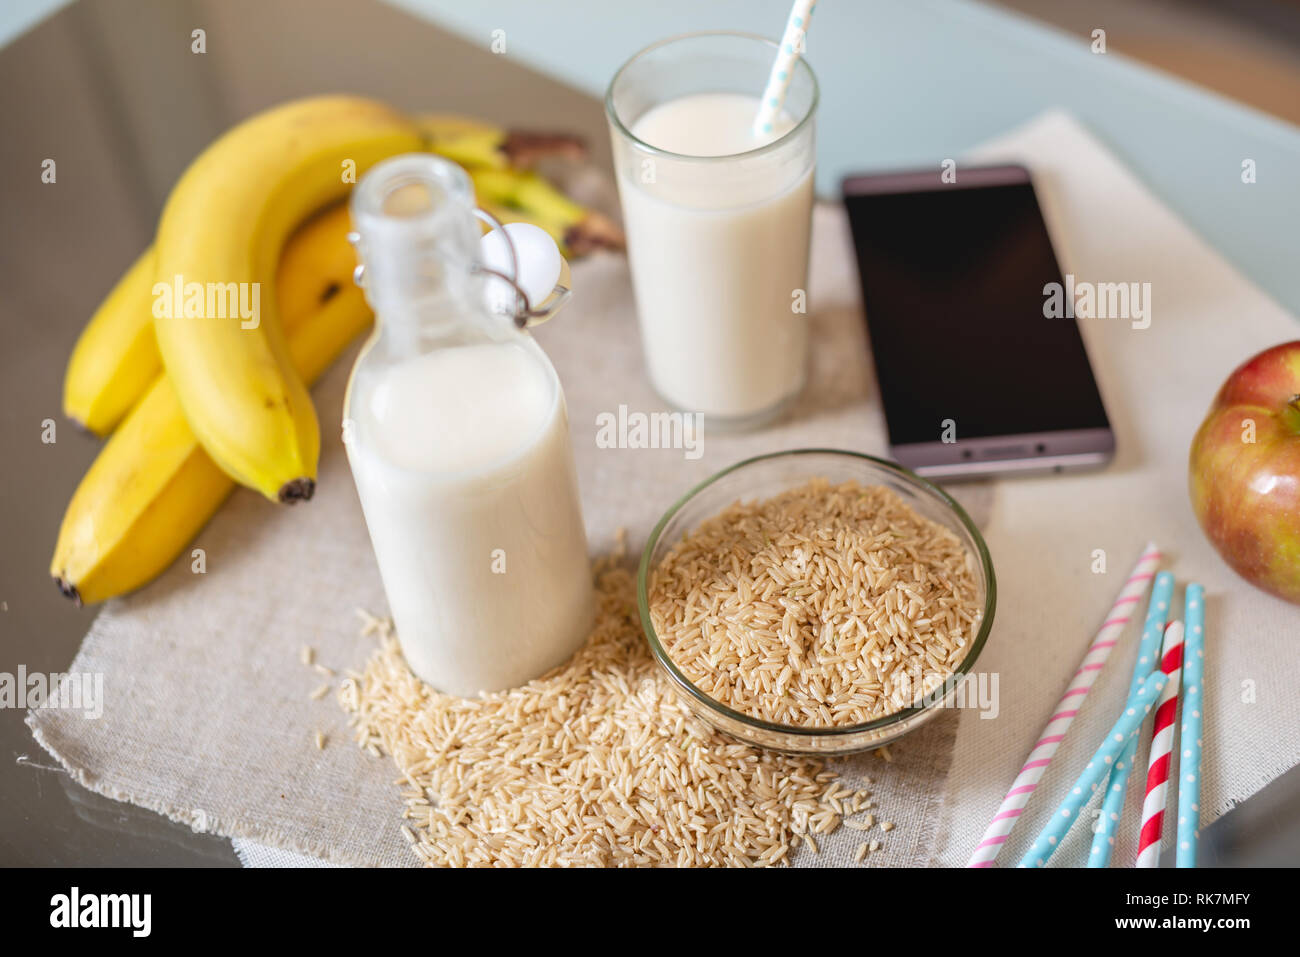 Le lait de riz dans une tasse en verre et des fruits avec des grains de riz sur la table. Produit végétarien sain de régime Banque D'Images